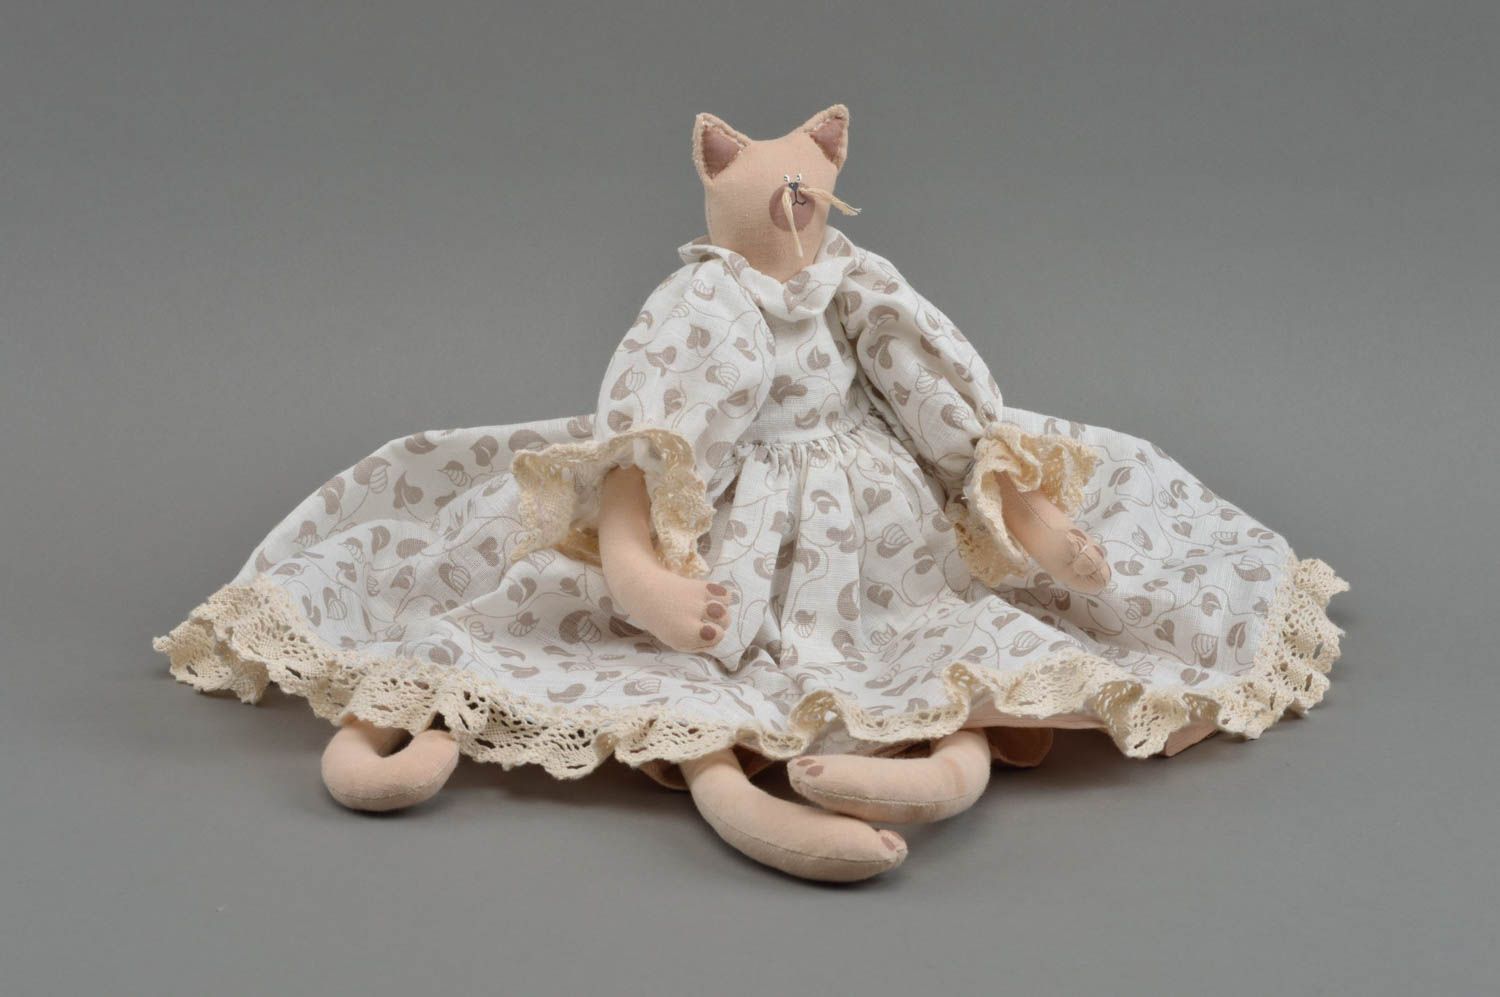 Textil Kuscheltier Katze weiß im hellen Kleid hoch schön handmade für Dekor foto 4